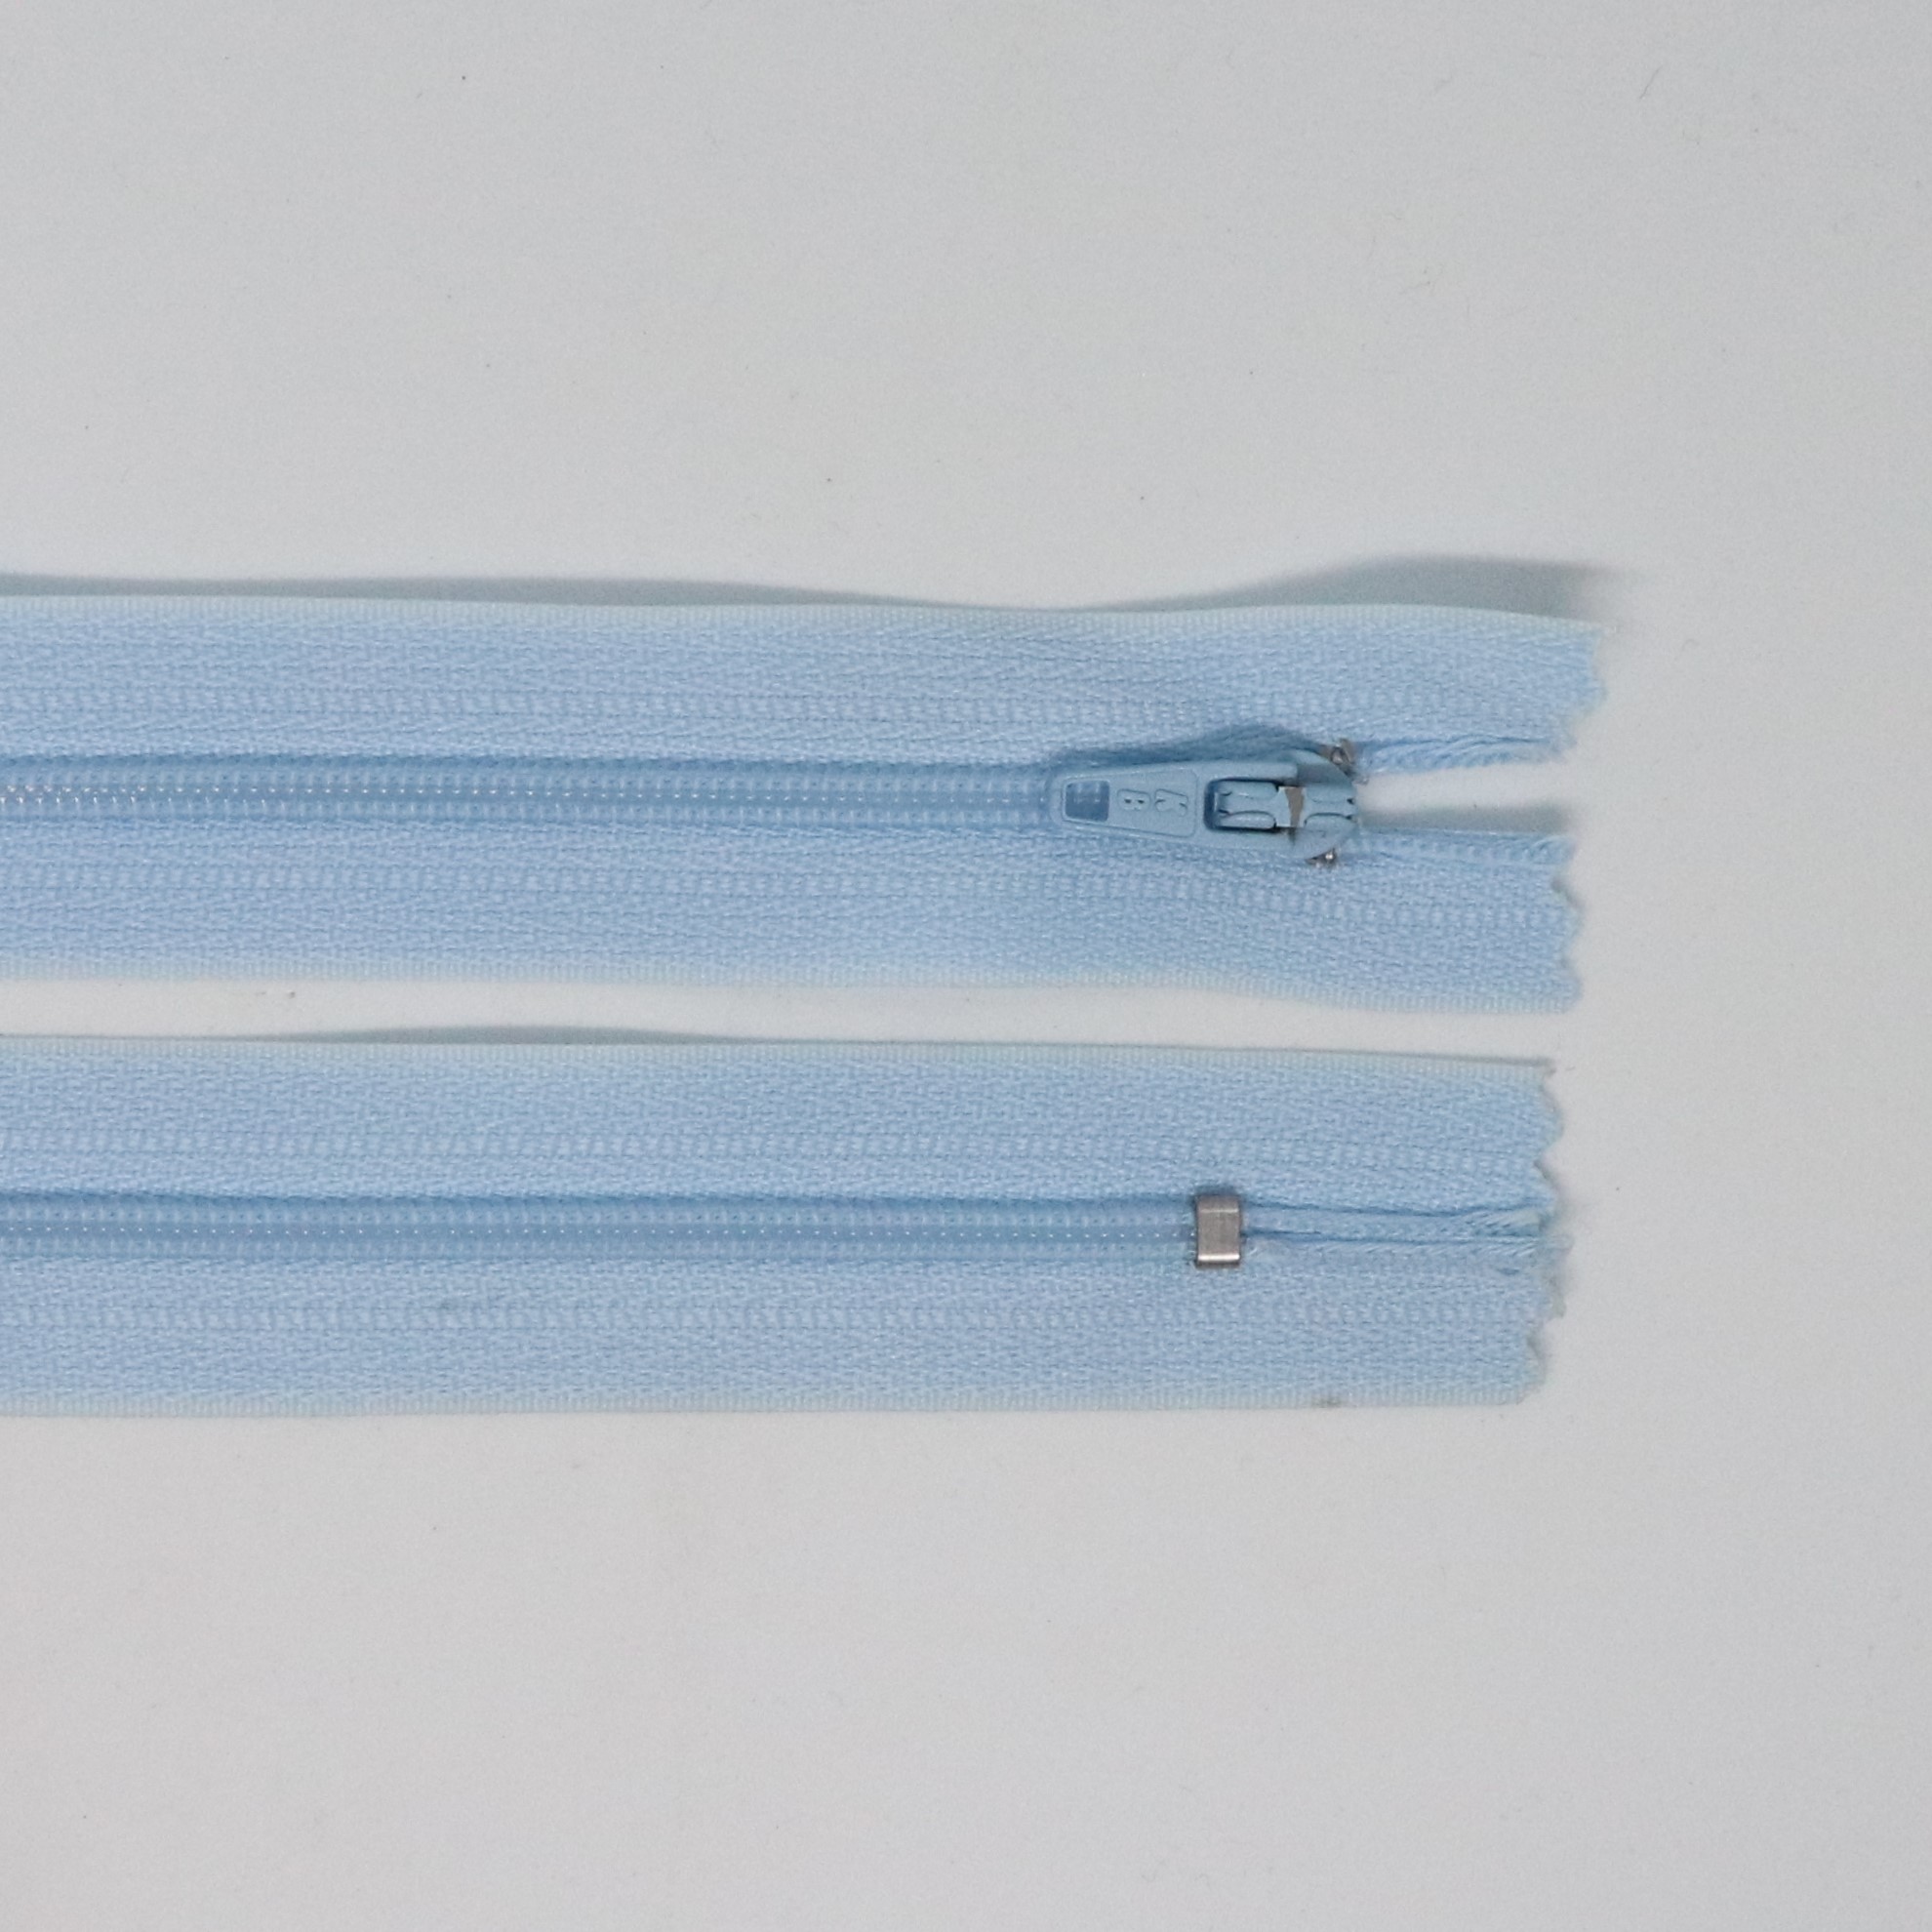 Spirálový zip, šíøe 3 mm, délka 40 cm, svìtle modrá - zvìtšit obrázek